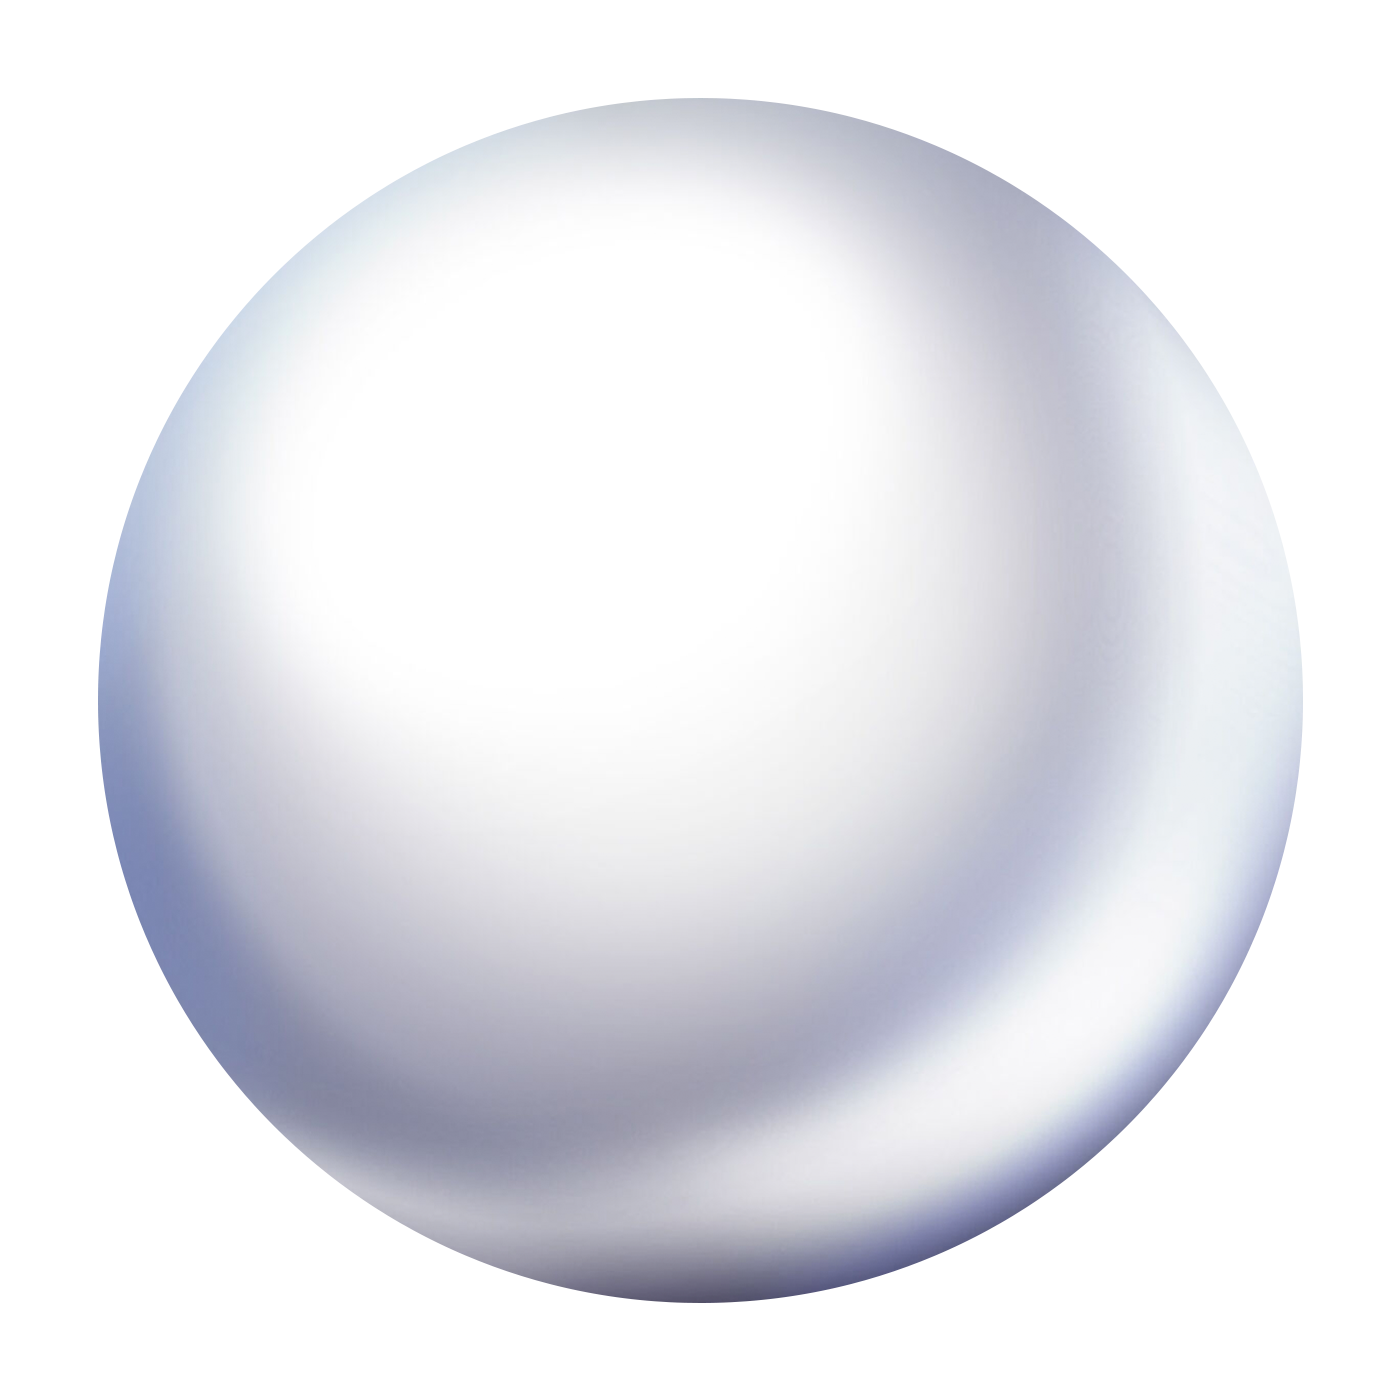 Объемный шар. Глянцевый шар. Шар объемная фигура. Объемный круг. Round ball